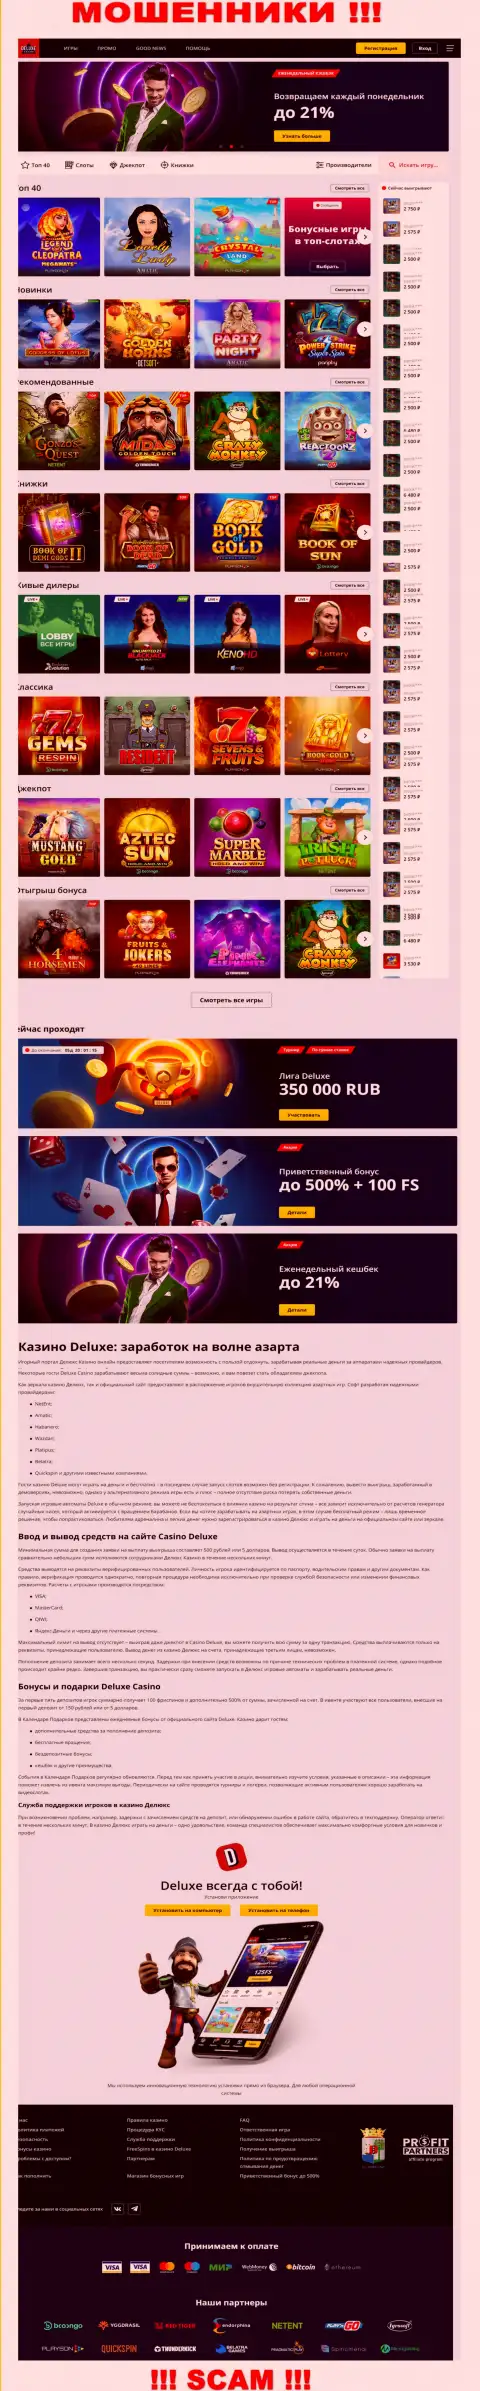 Официальная online страница организации Deluxe Casino